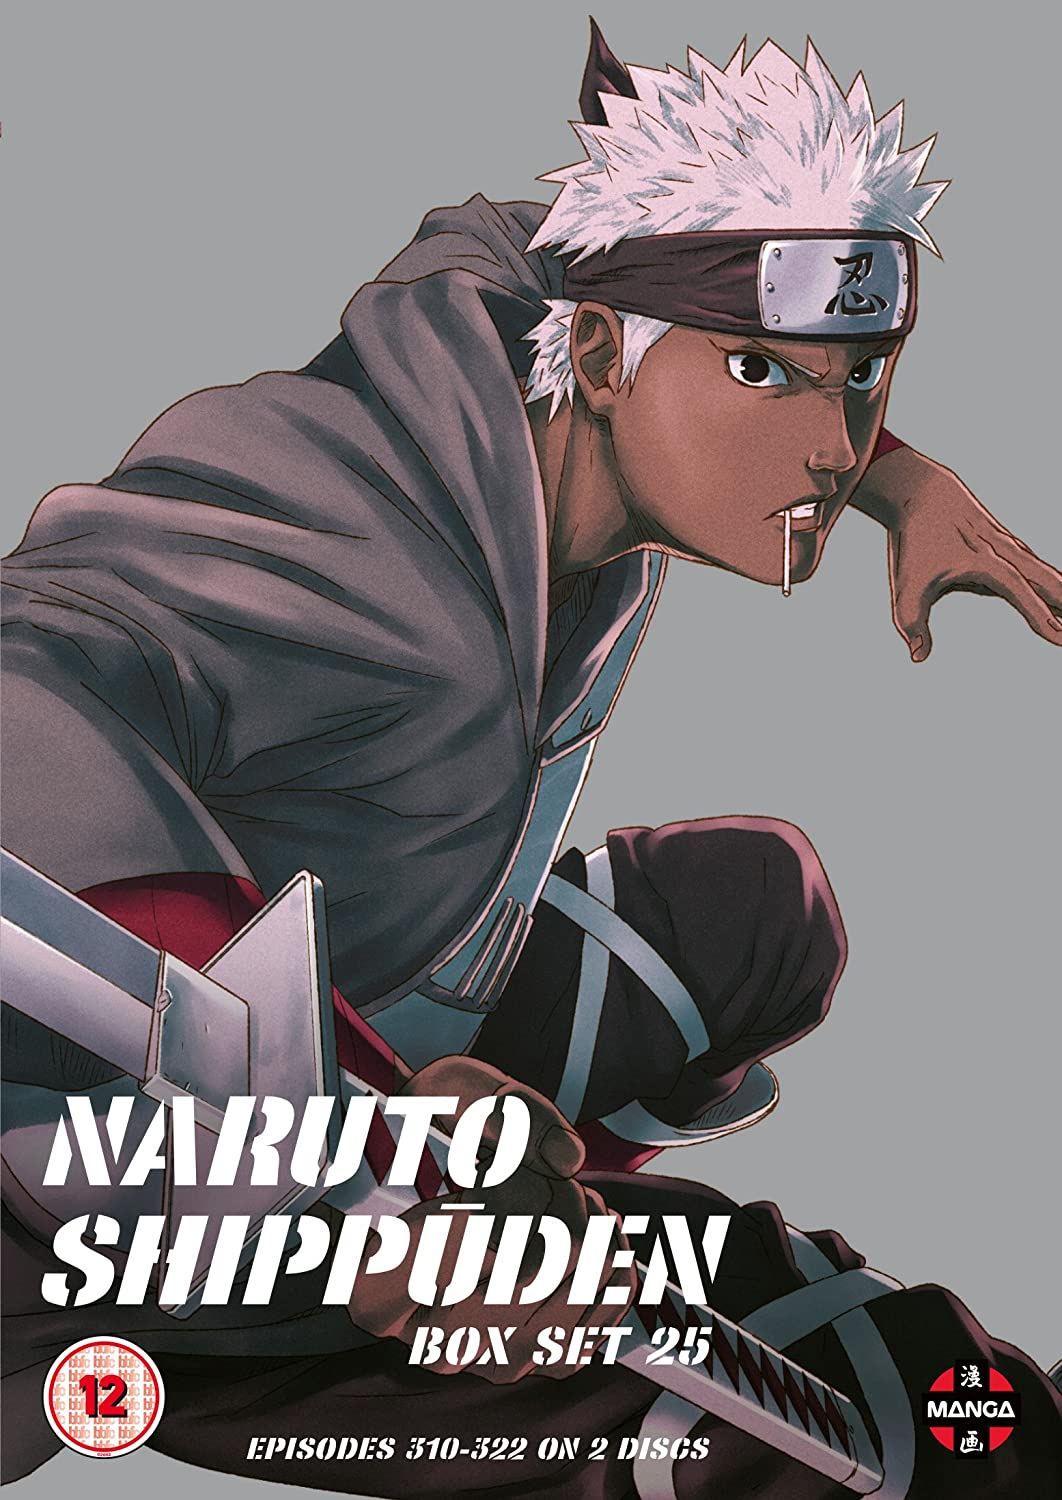 Naruto Shippuden Box 25 (Episodes 3010-322) - Action fiction [DVD]